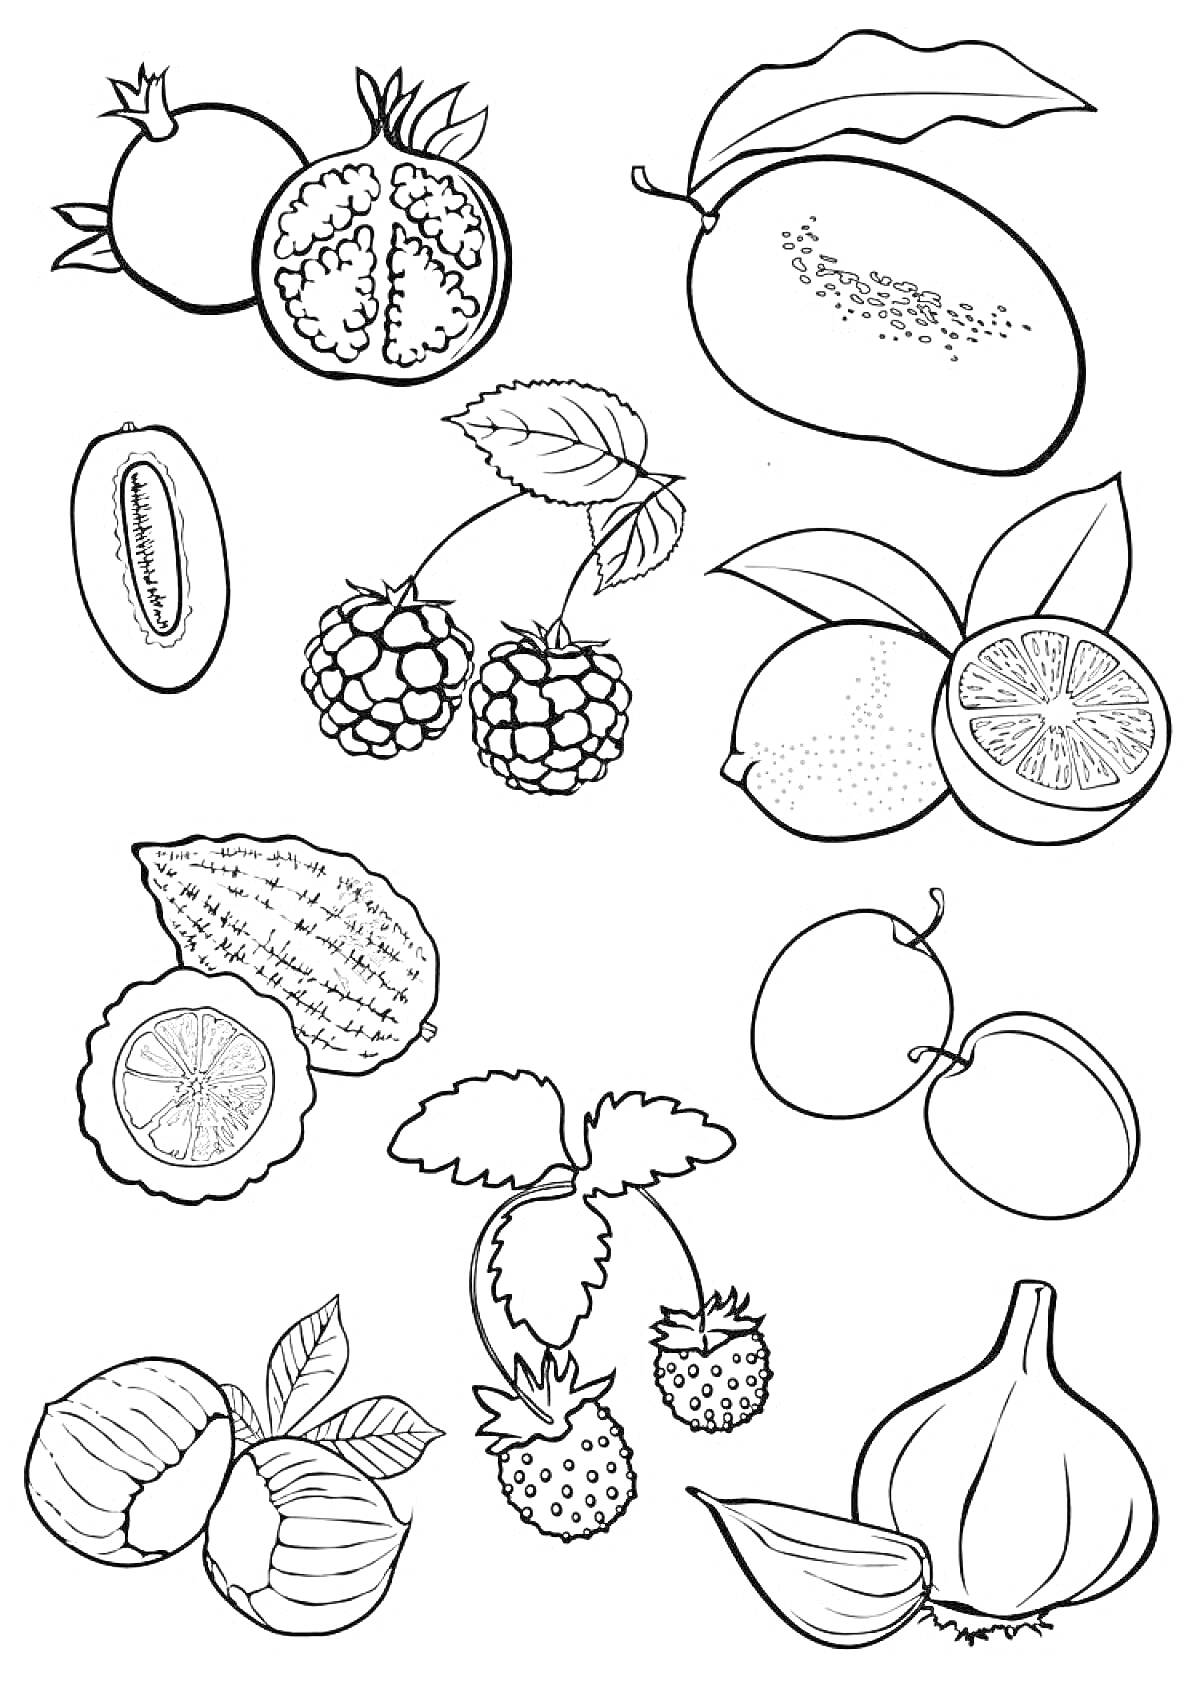 Раскраска с изображениями граната, манго, киви, малины, лимона, лайма, личи, абрикоса, фундука и инжира